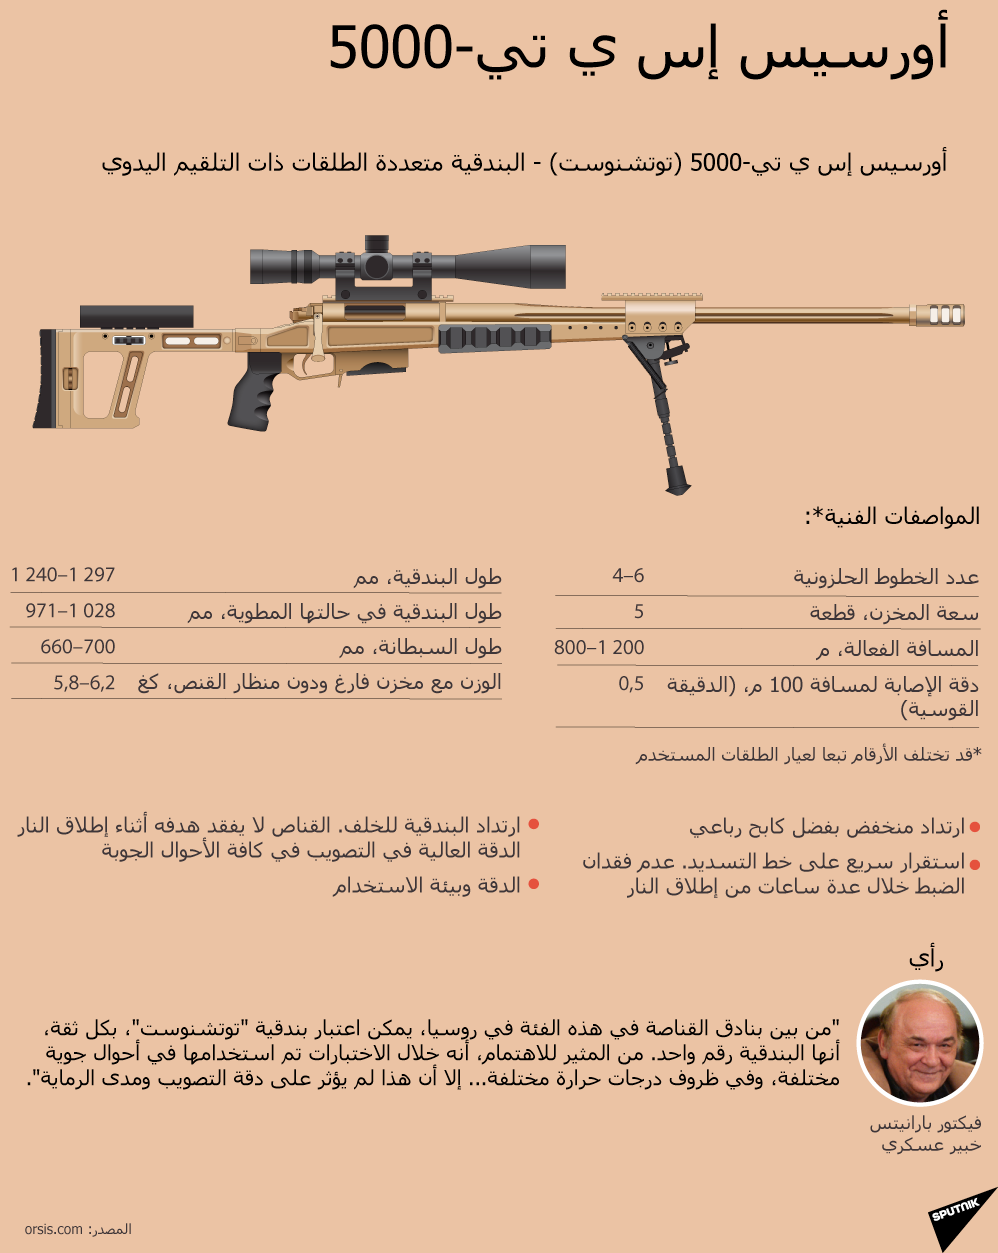 بندقية القناصة توتشنوست (الدقة) الروسية - سبوتنيك عربي